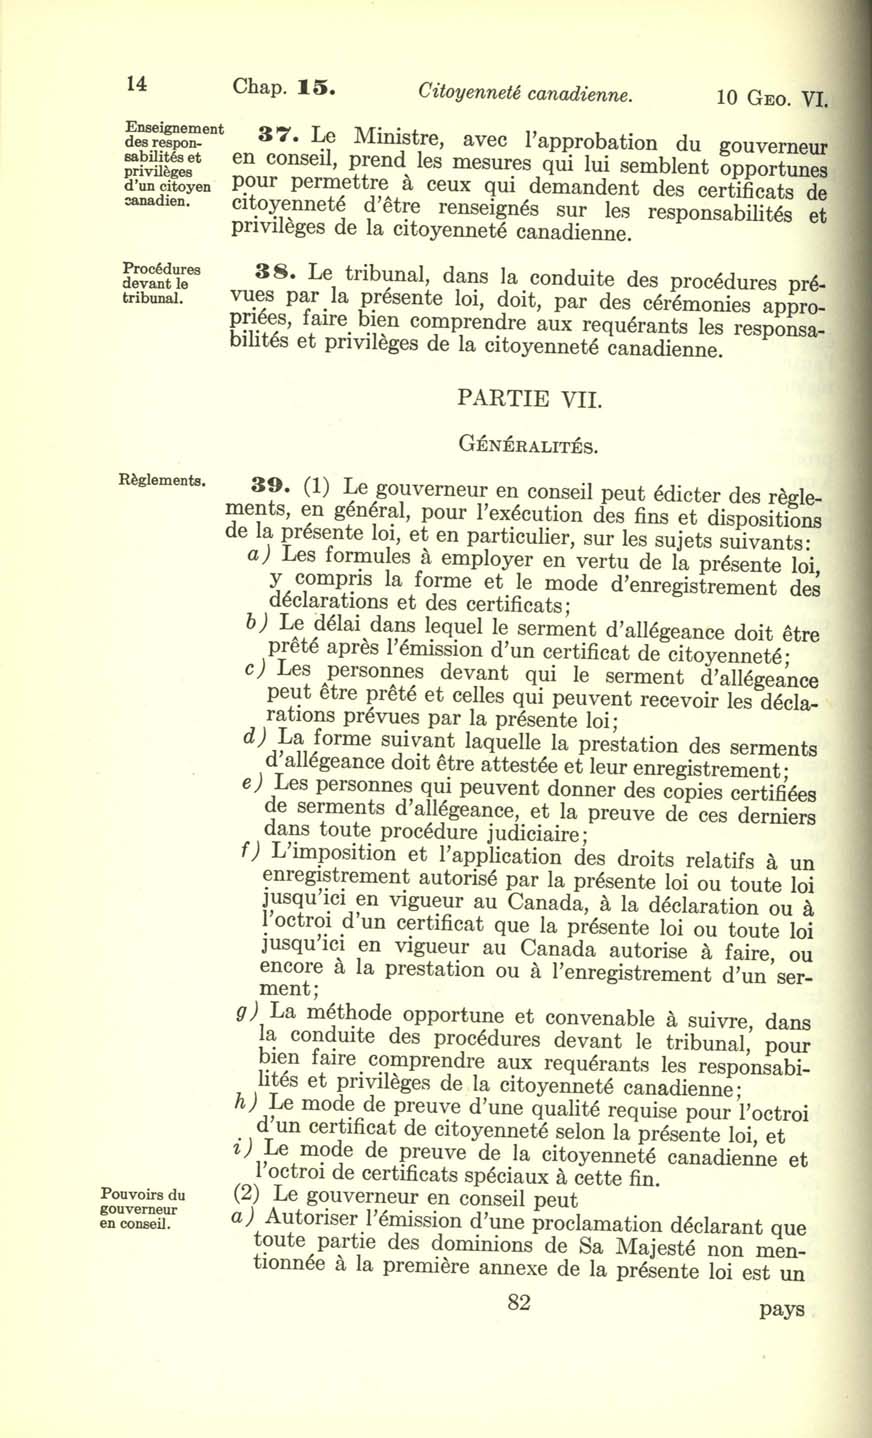 Chap. 15 Page 82 Loi sur la citoyenneté canadienne, 1947